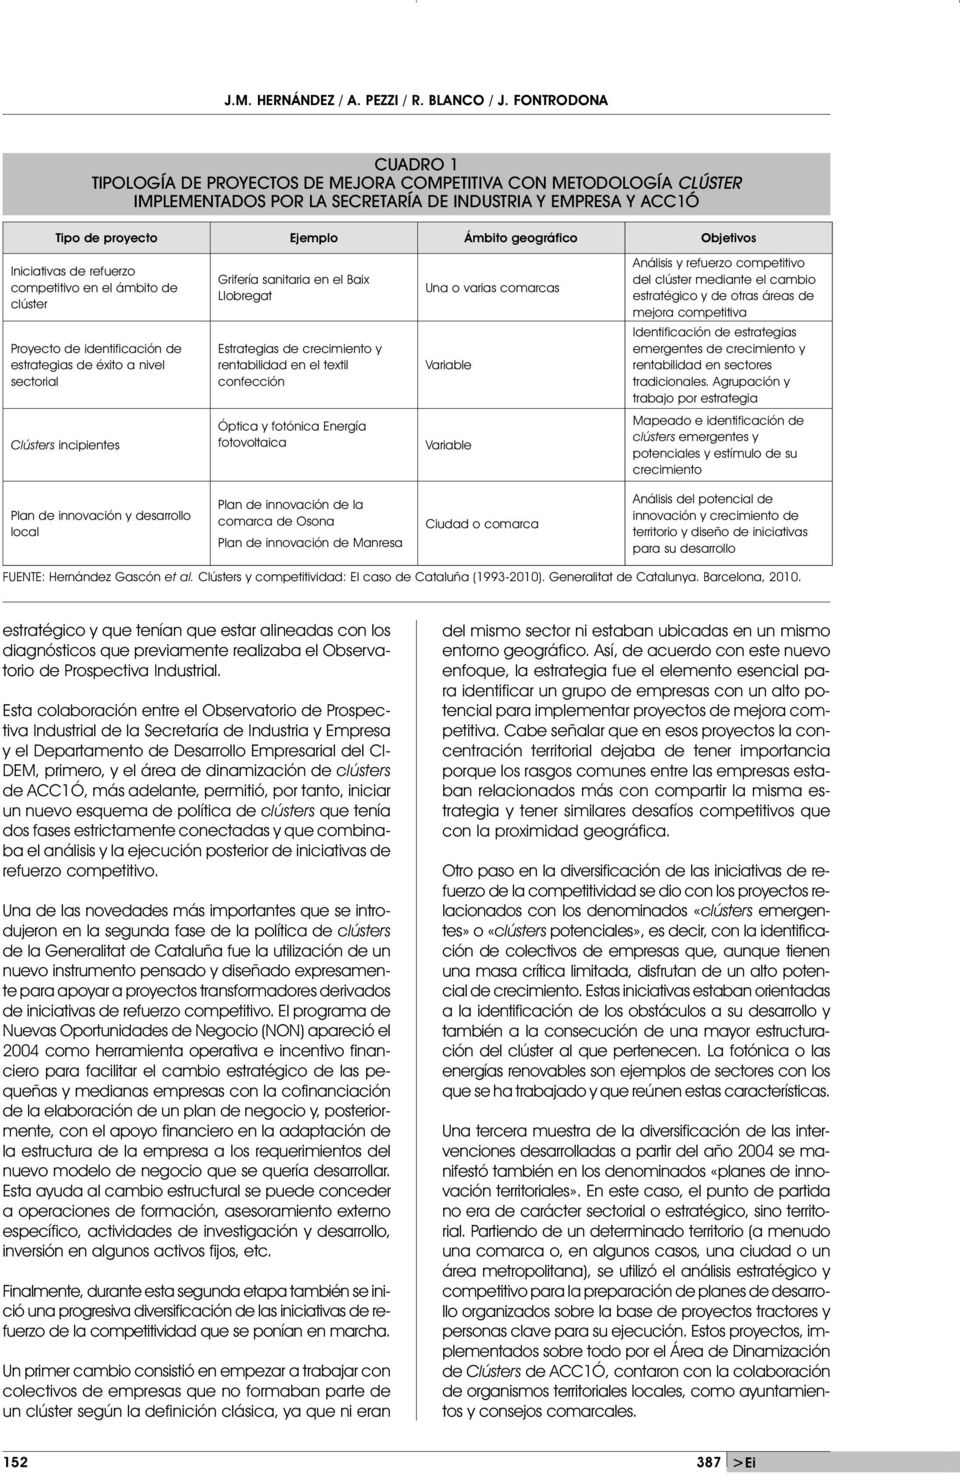 Objetivos Iniciativas de refuerzo competitivo en el ámbito de clúster Proyecto de identificación de estrategias de éxito a nivel sectorial Grifería sanitaria en el Baix Llobregat Estrategias de